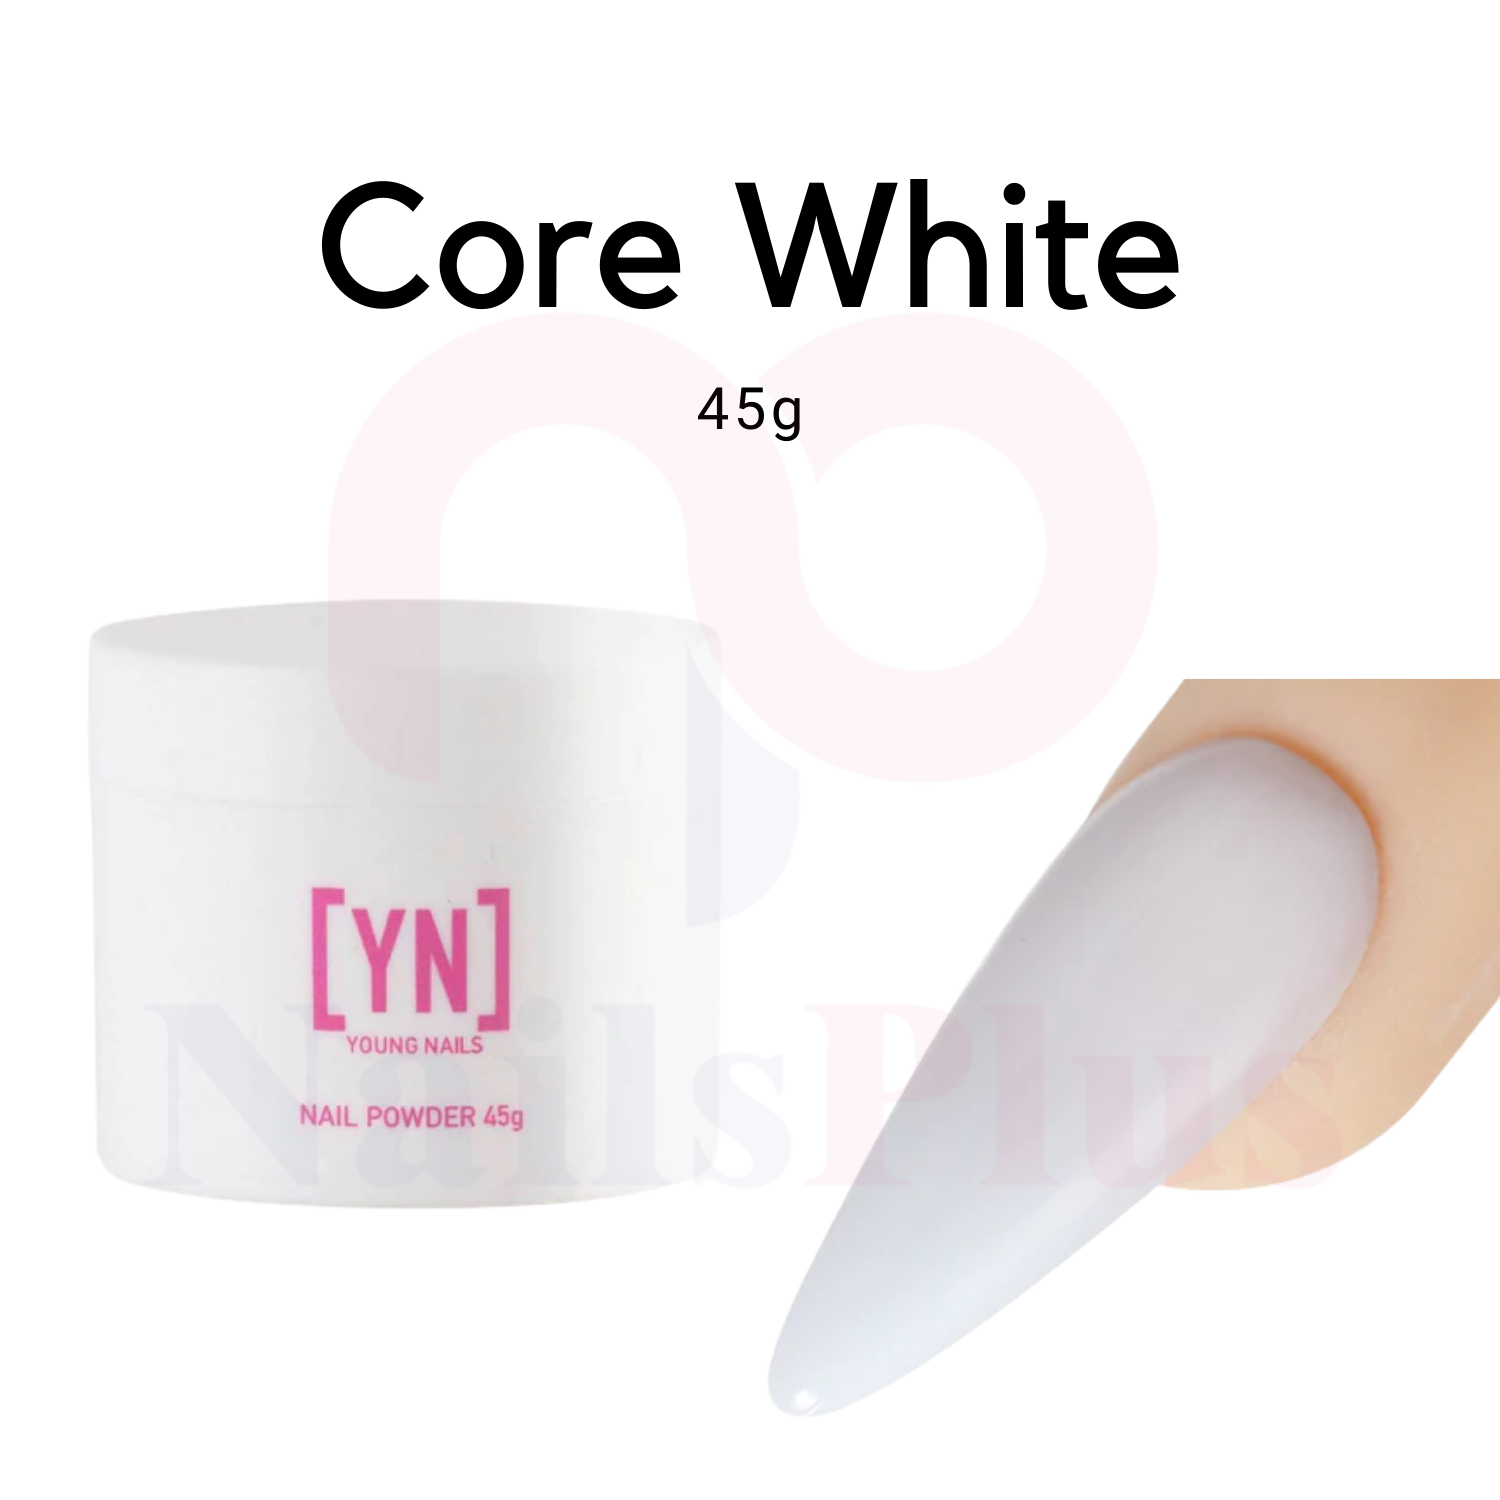 Core White